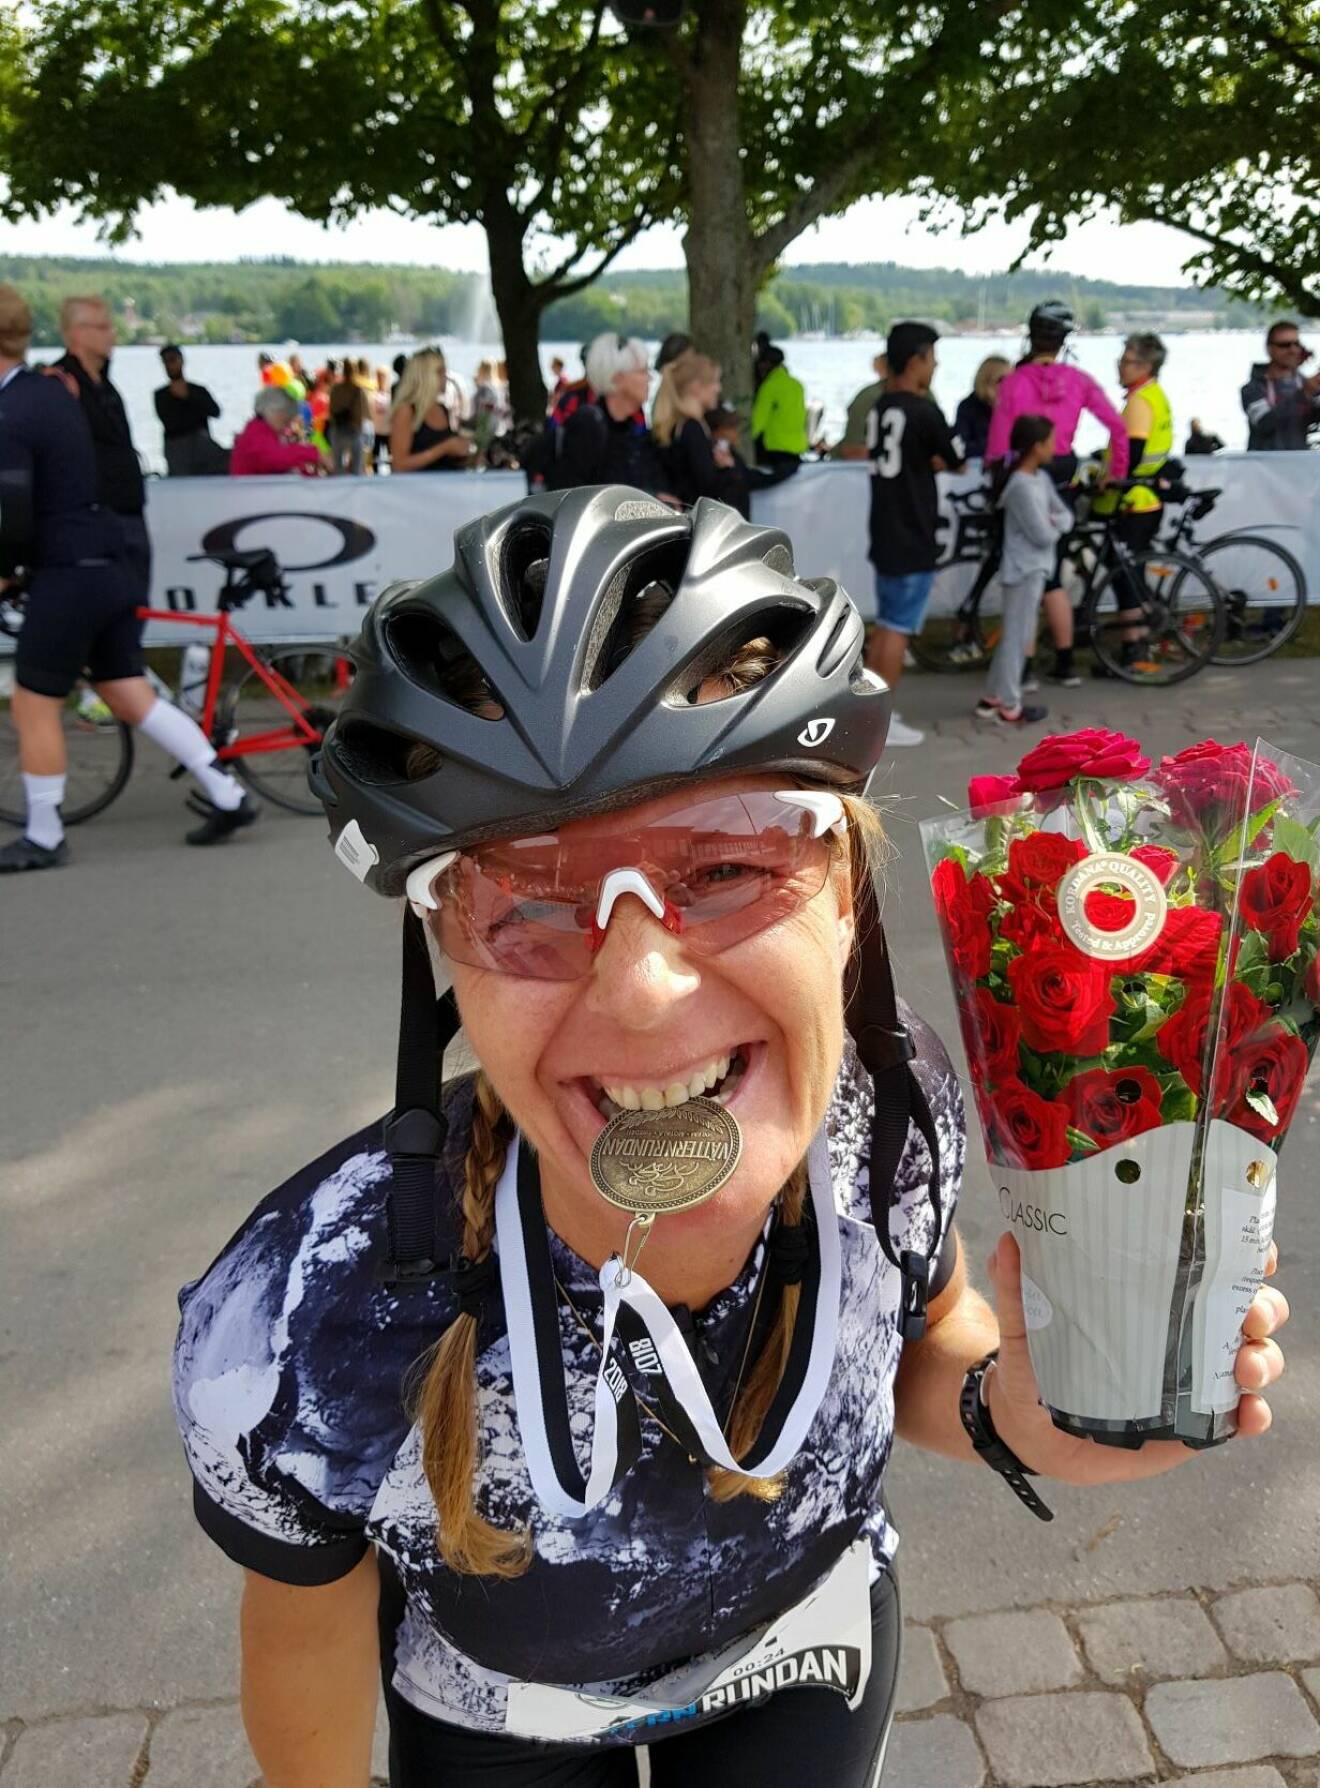 Pia Jensen iklädd cykelhjälm och träningskläder, med blomma i ena handen och medalj från Vätternrundan mellan tänderna.